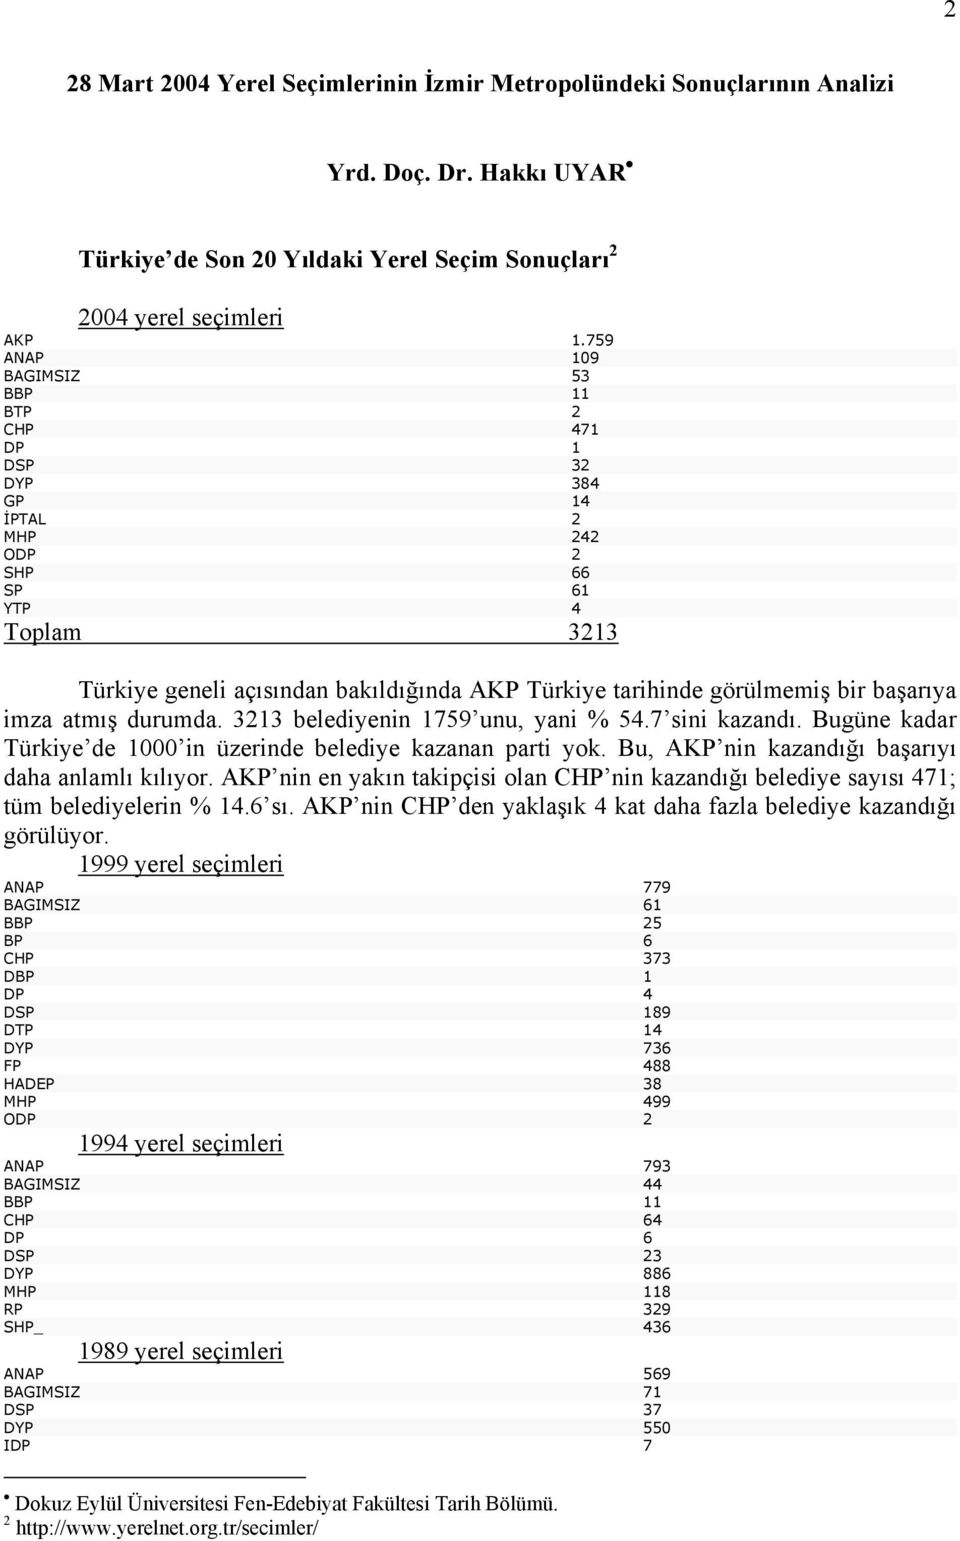 başarıya imza atmış durumda. 3213 belediyenin 1759 unu, yani % 54.7 sini kazandı. Bugüne kadar Türkiye de 1000 in üzerinde belediye kazanan parti yok.